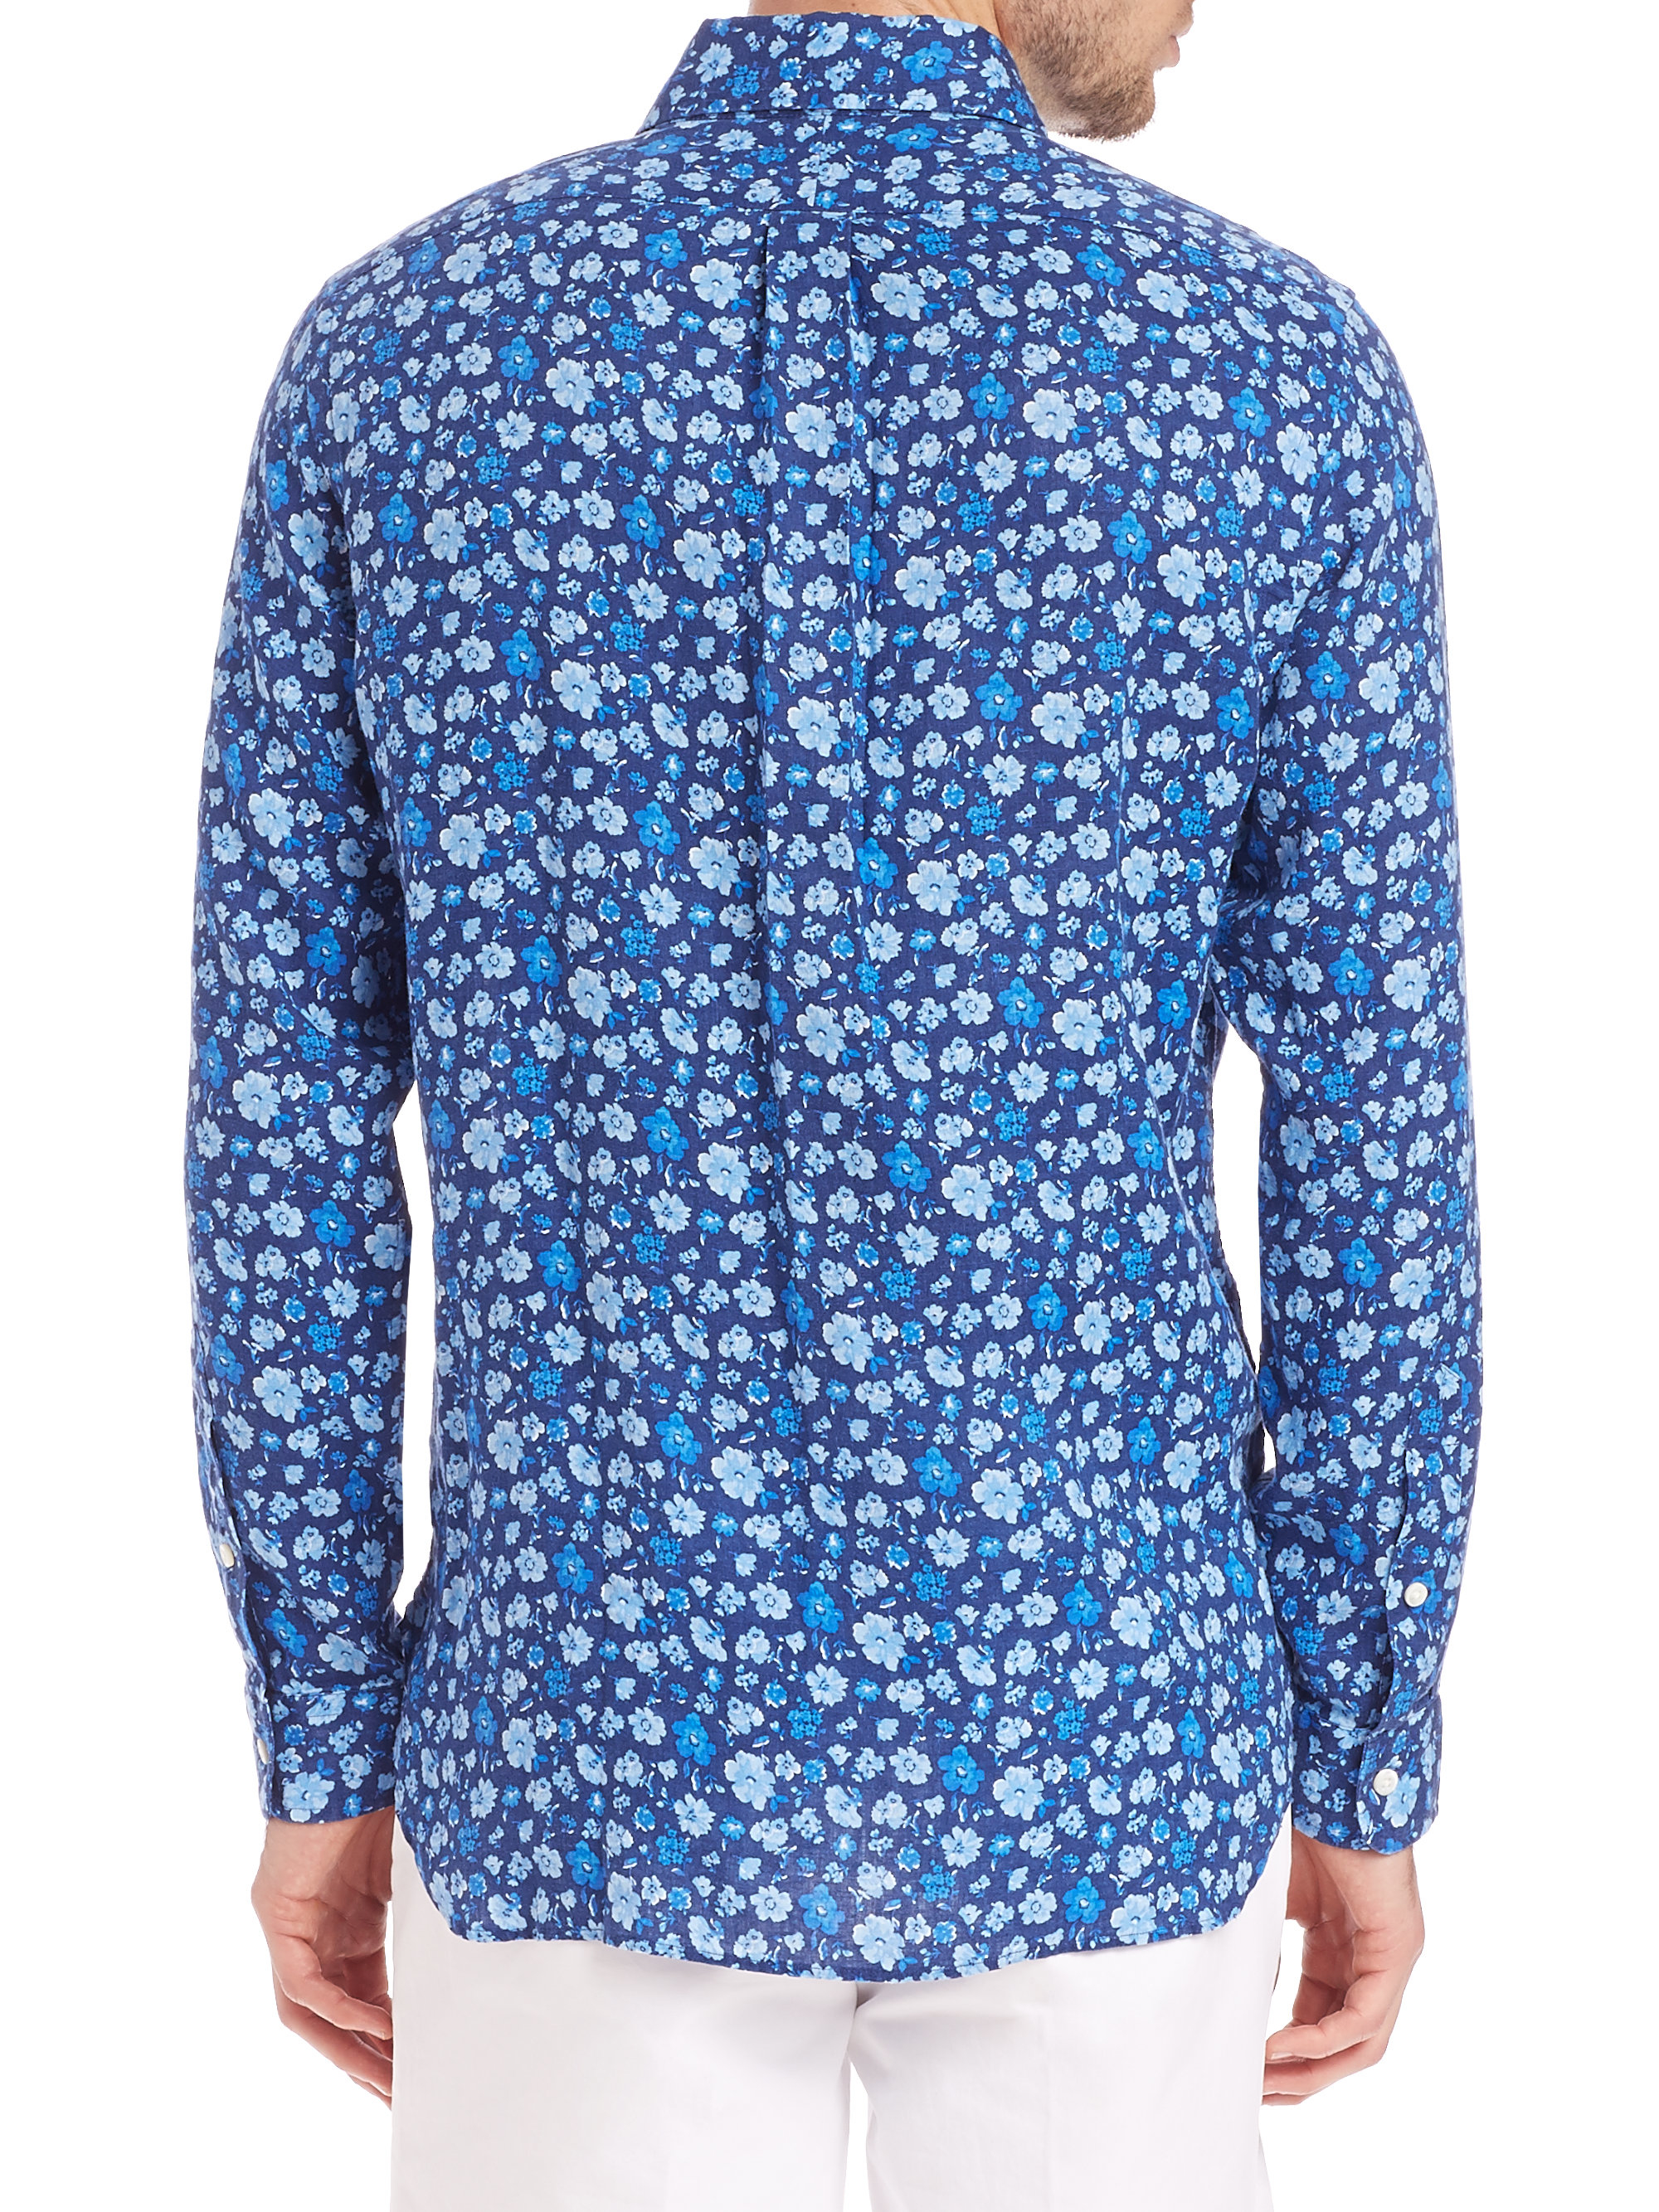 Lyst - Polo Ralph Lauren Floral Linen Sport Shirt in Blue for Men